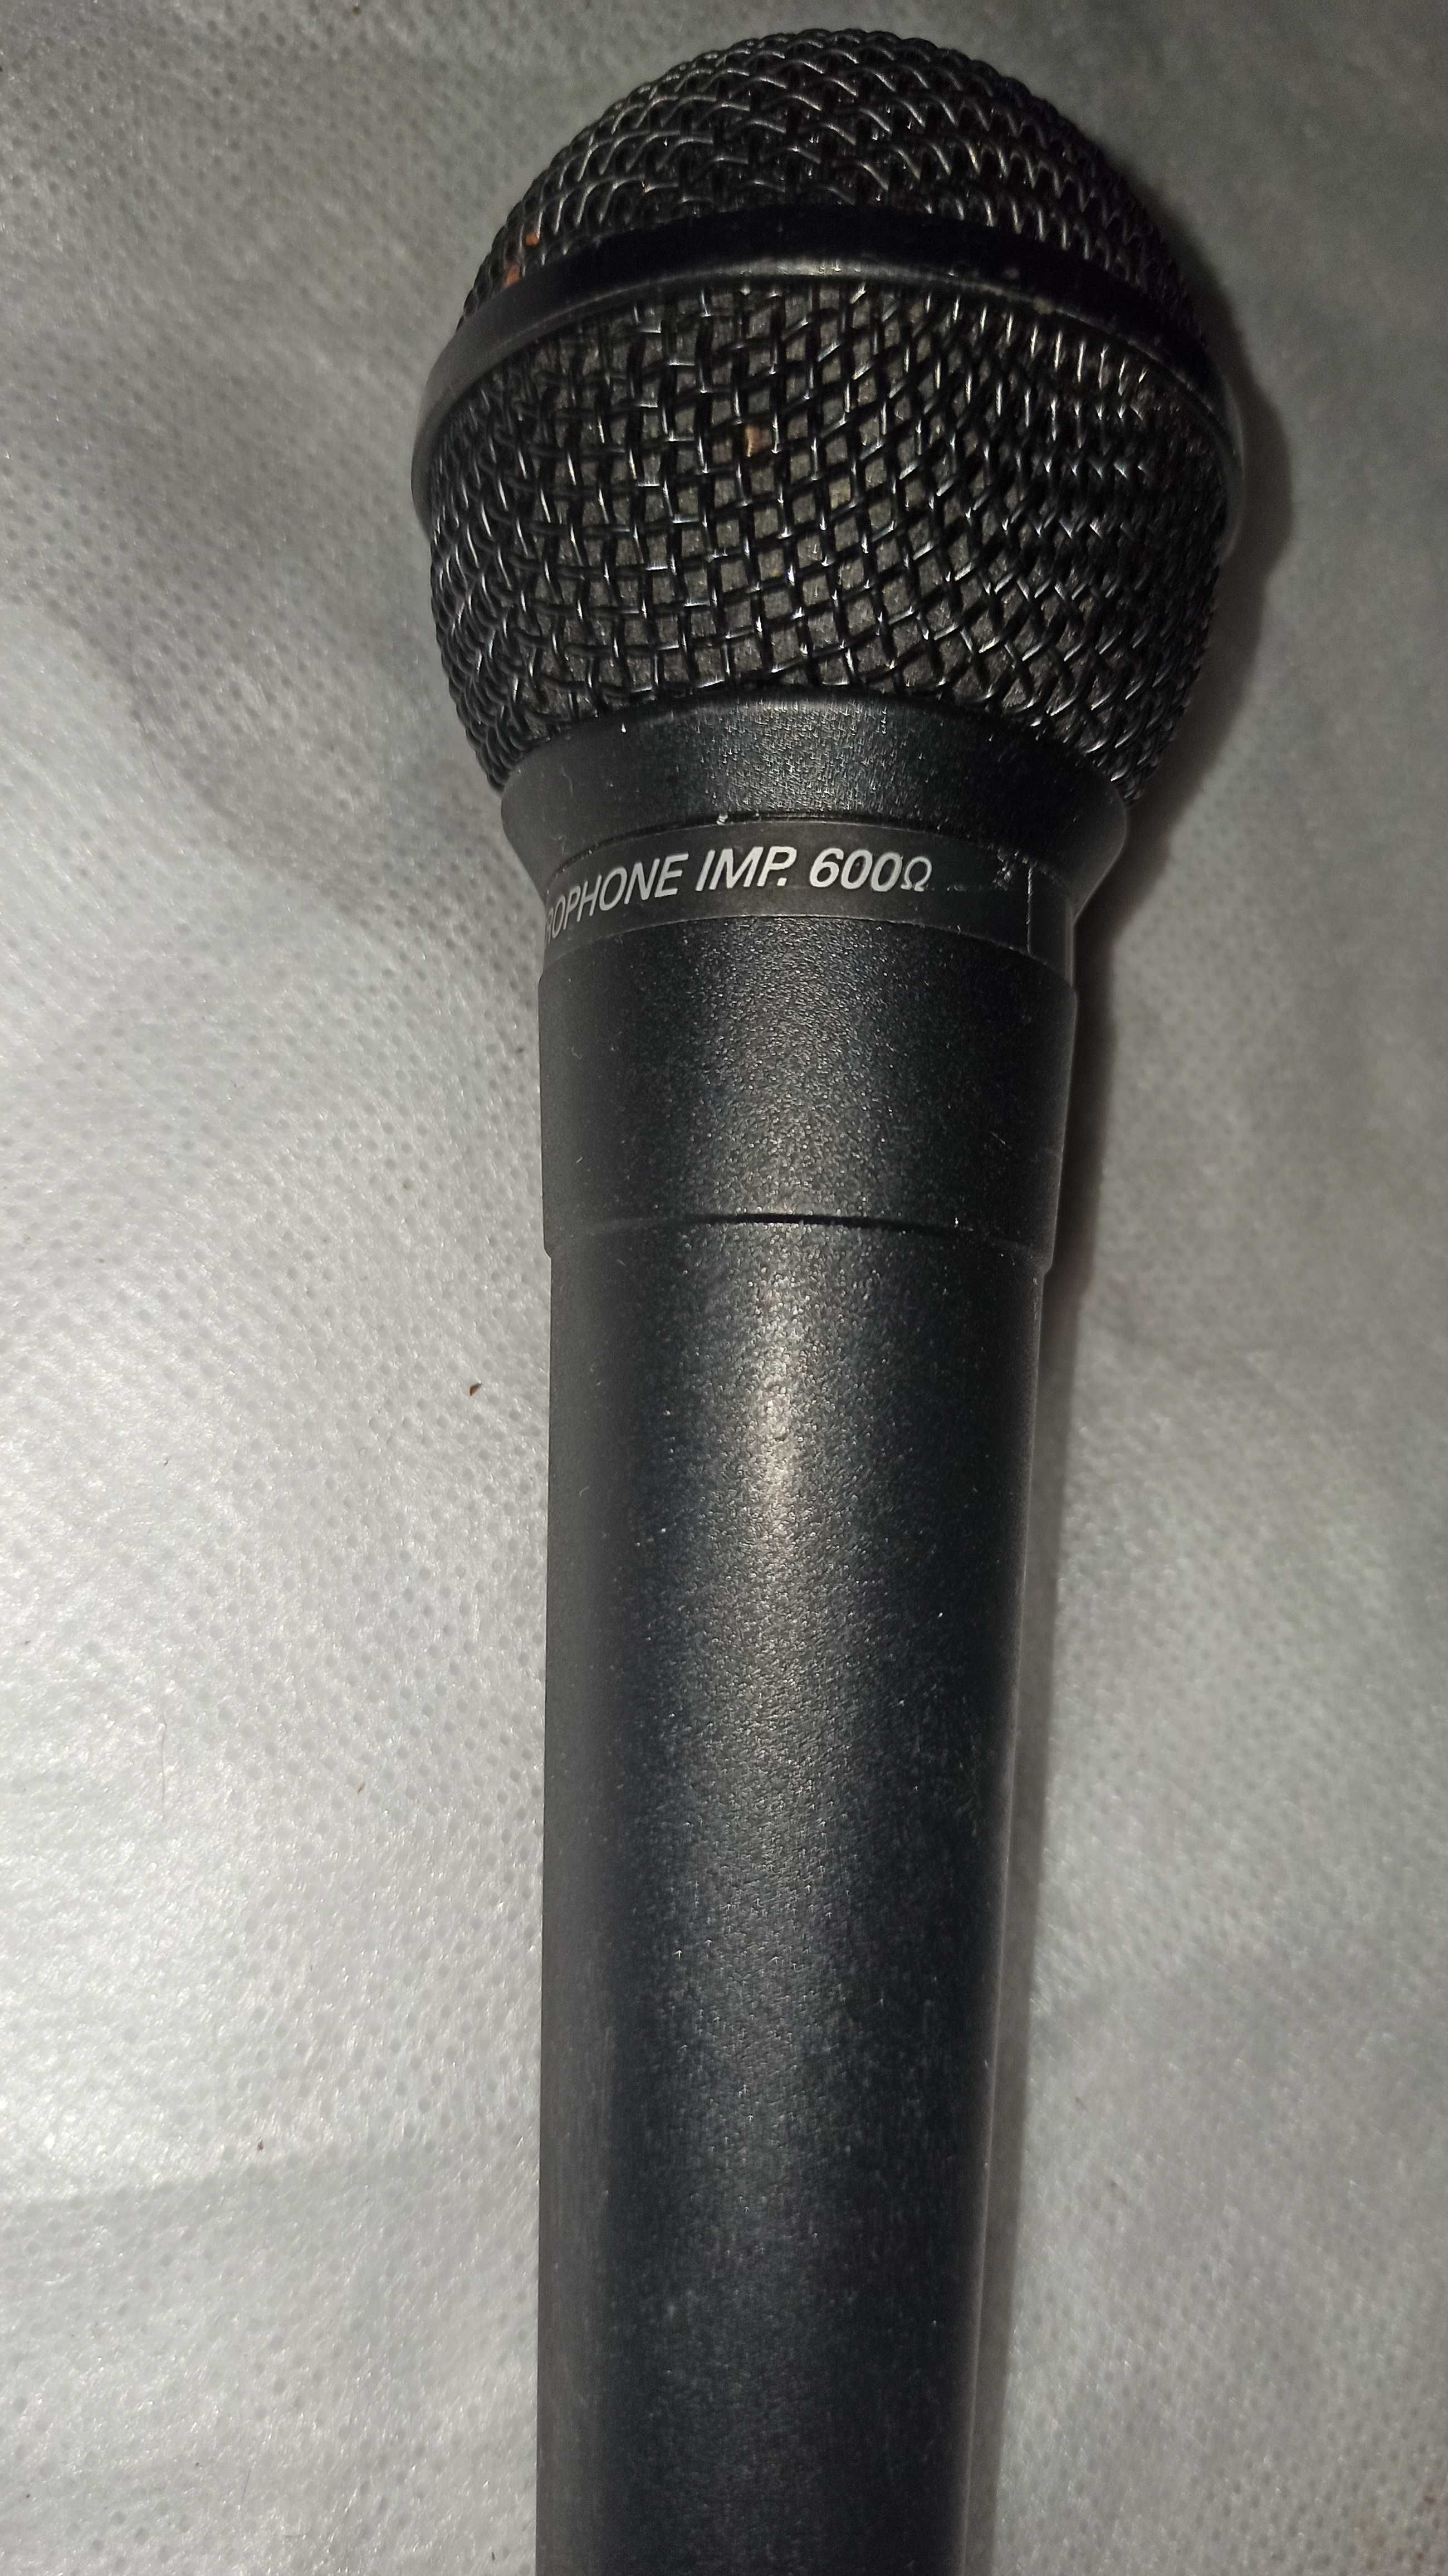 Микрофон Jefe AVL506+ Микрофон Philips SBC MD110 в подарок